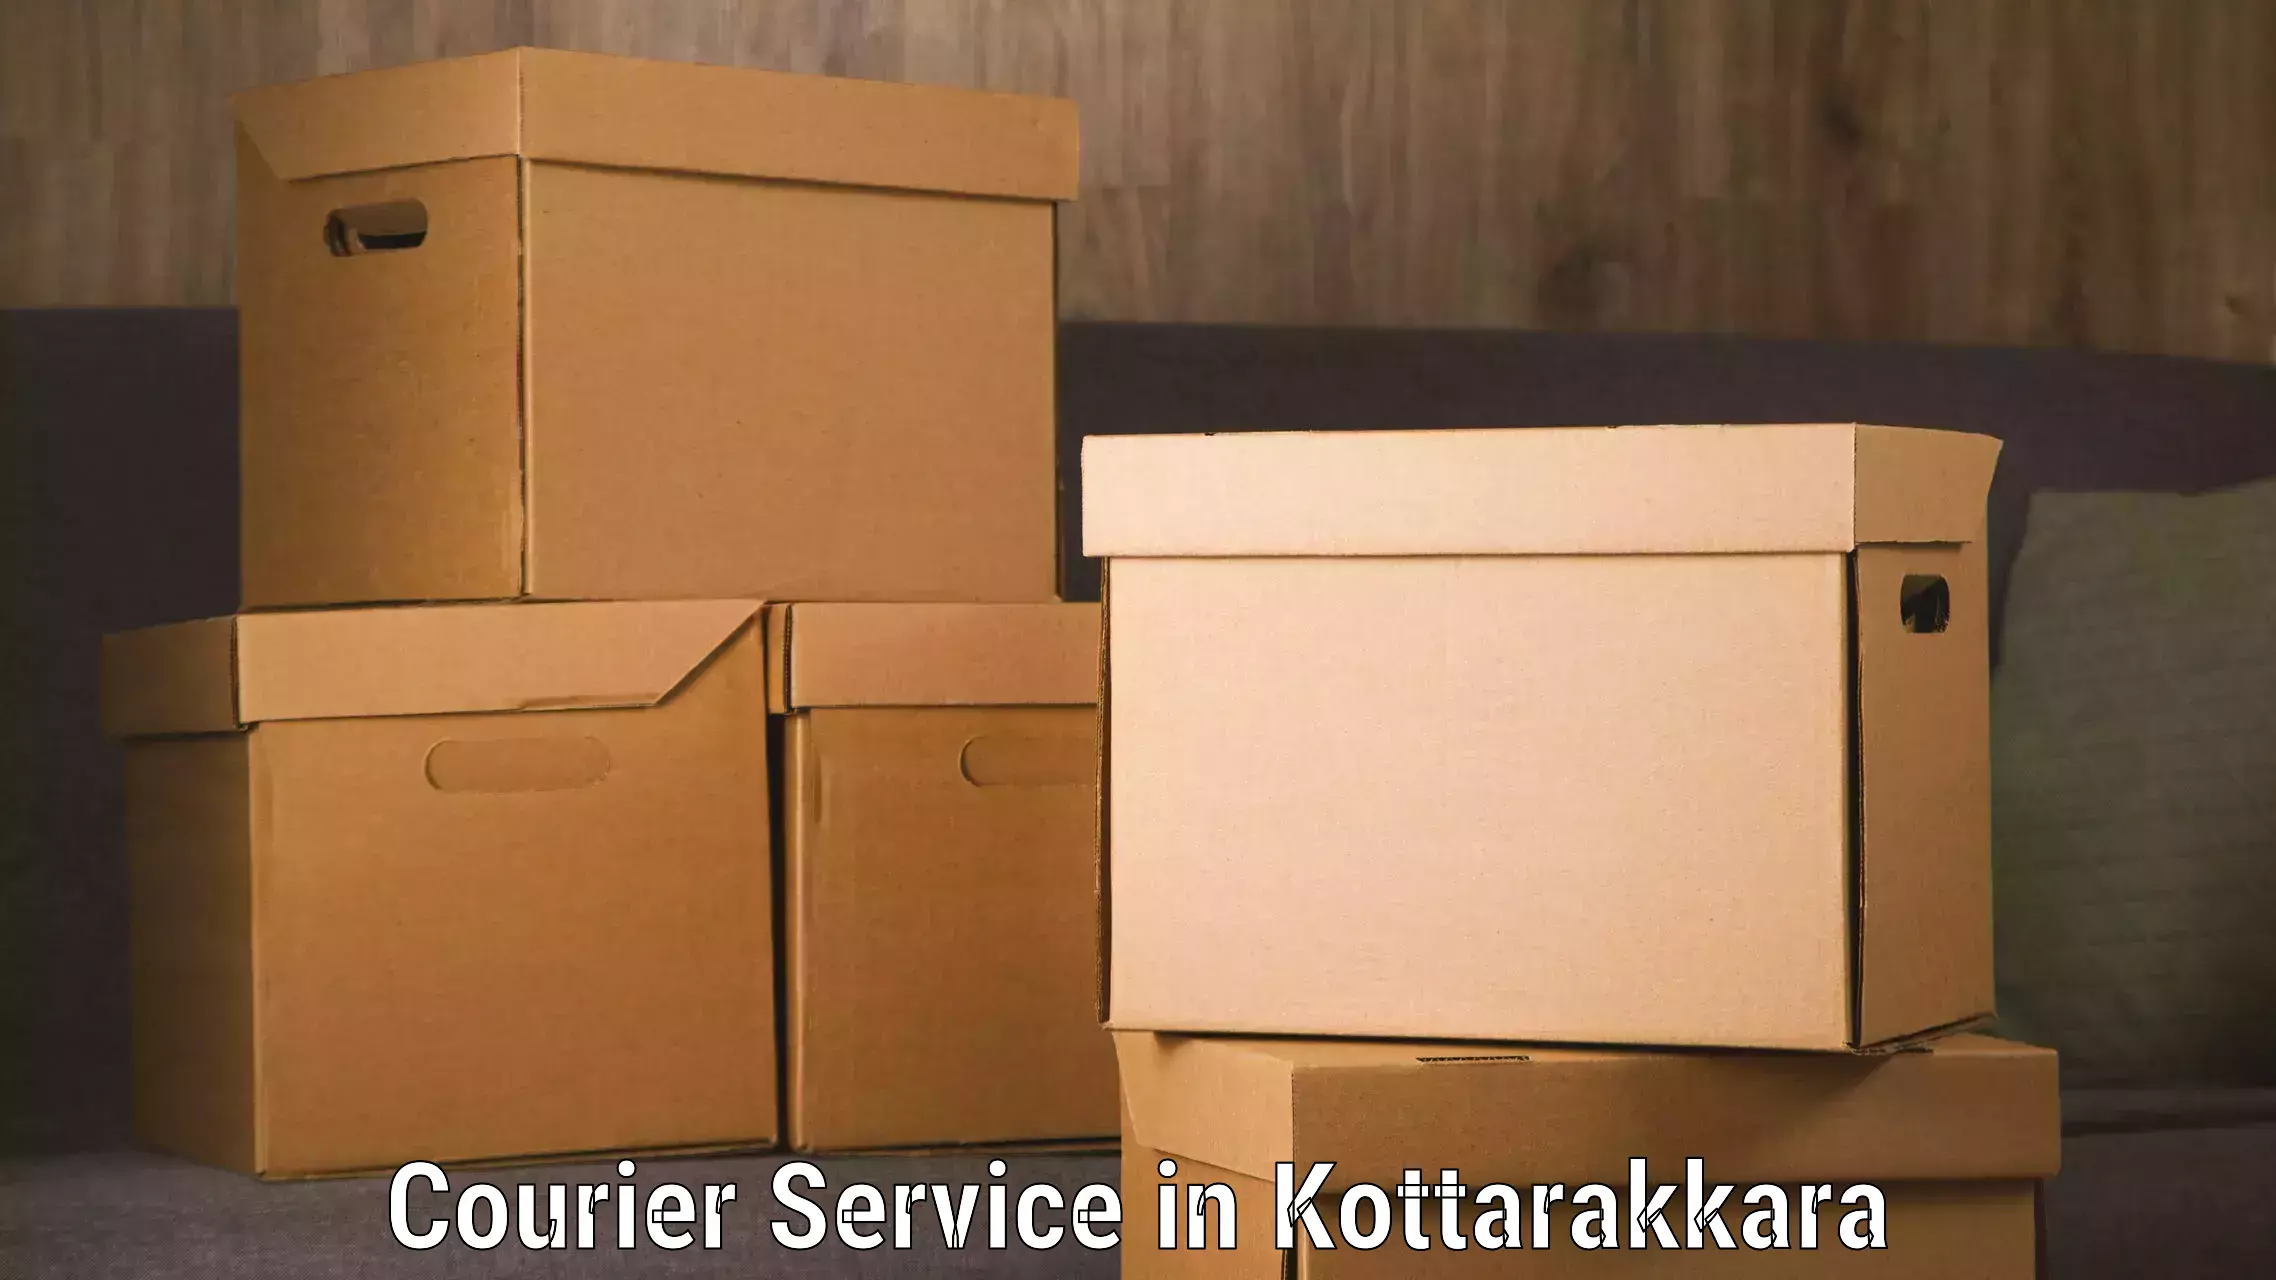 Doorstep delivery service in Kottarakkara